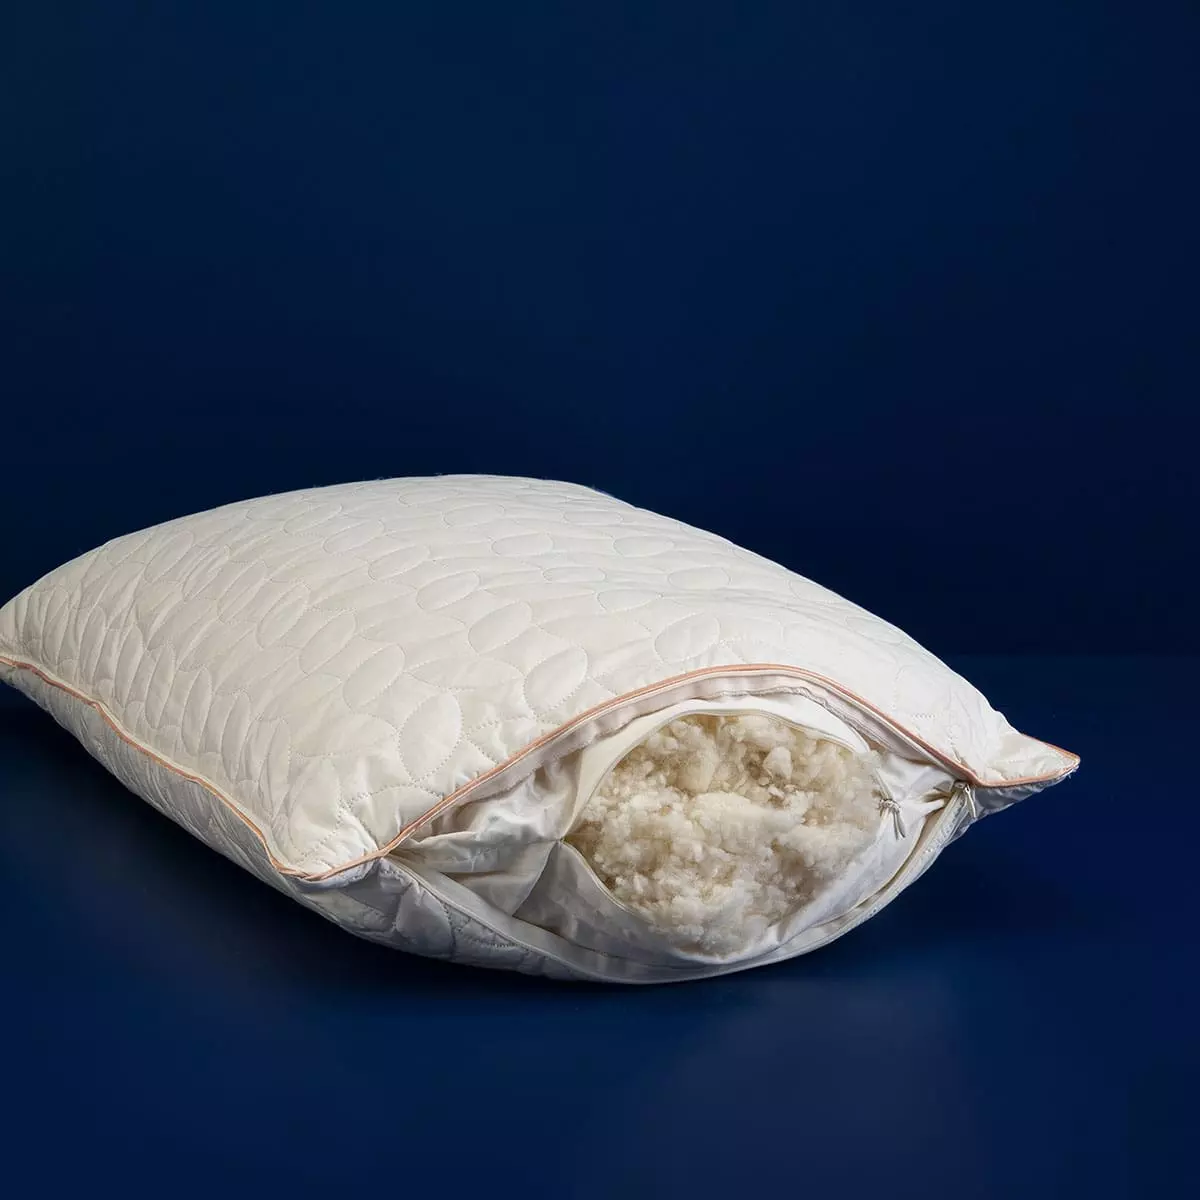 Hälsa Klarälven Australian Wool Cotton Fabric Pillow